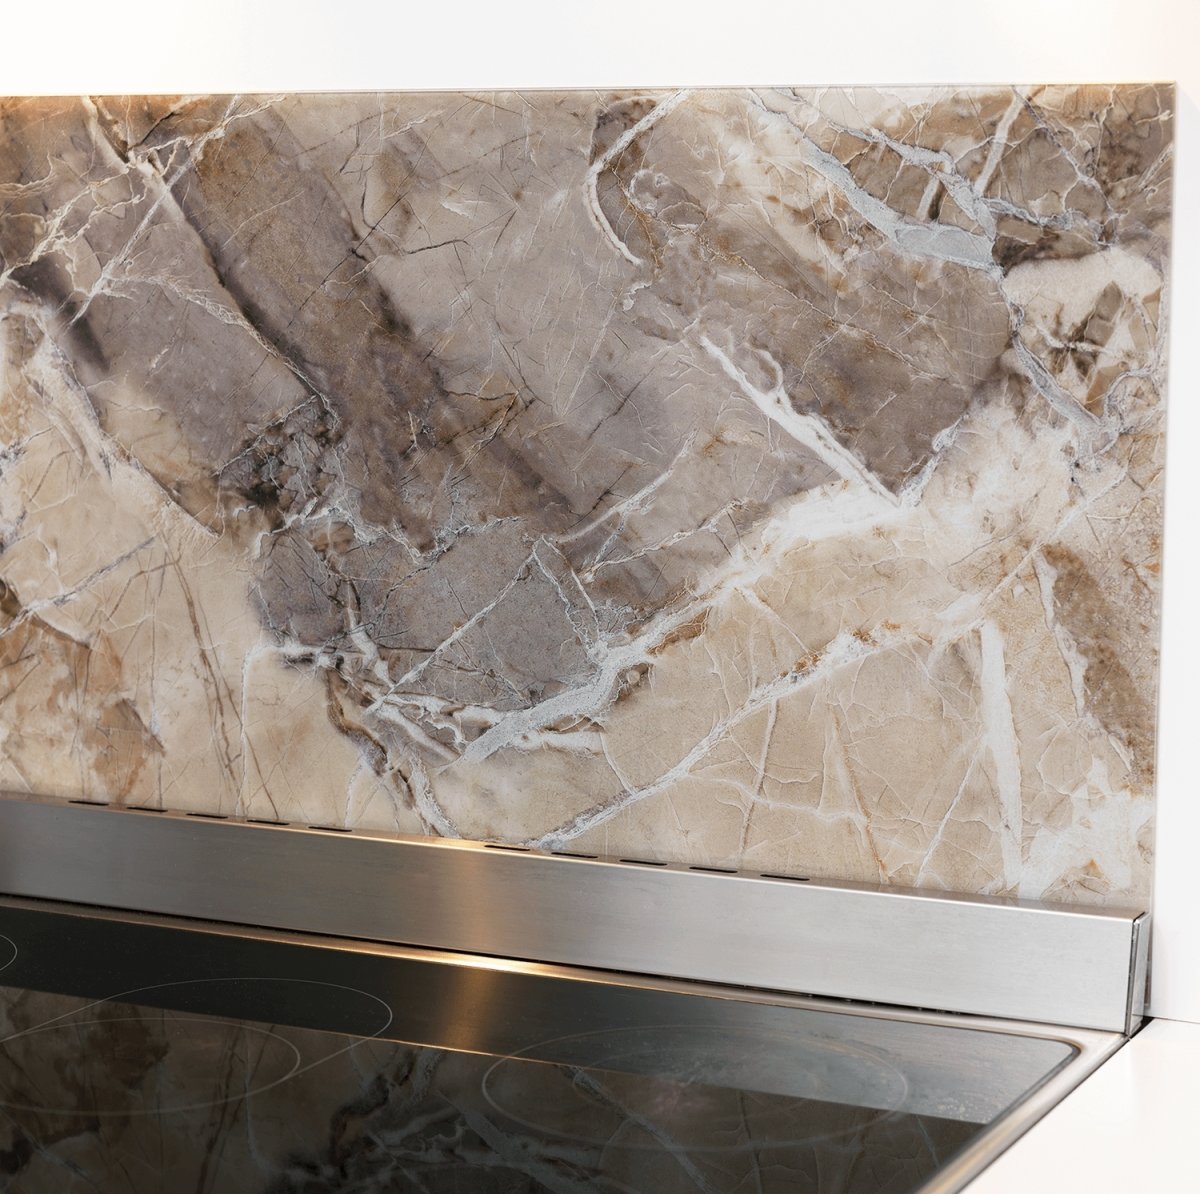 NAGA magnetisk stænkplade, 100x50 cm, beige marmor